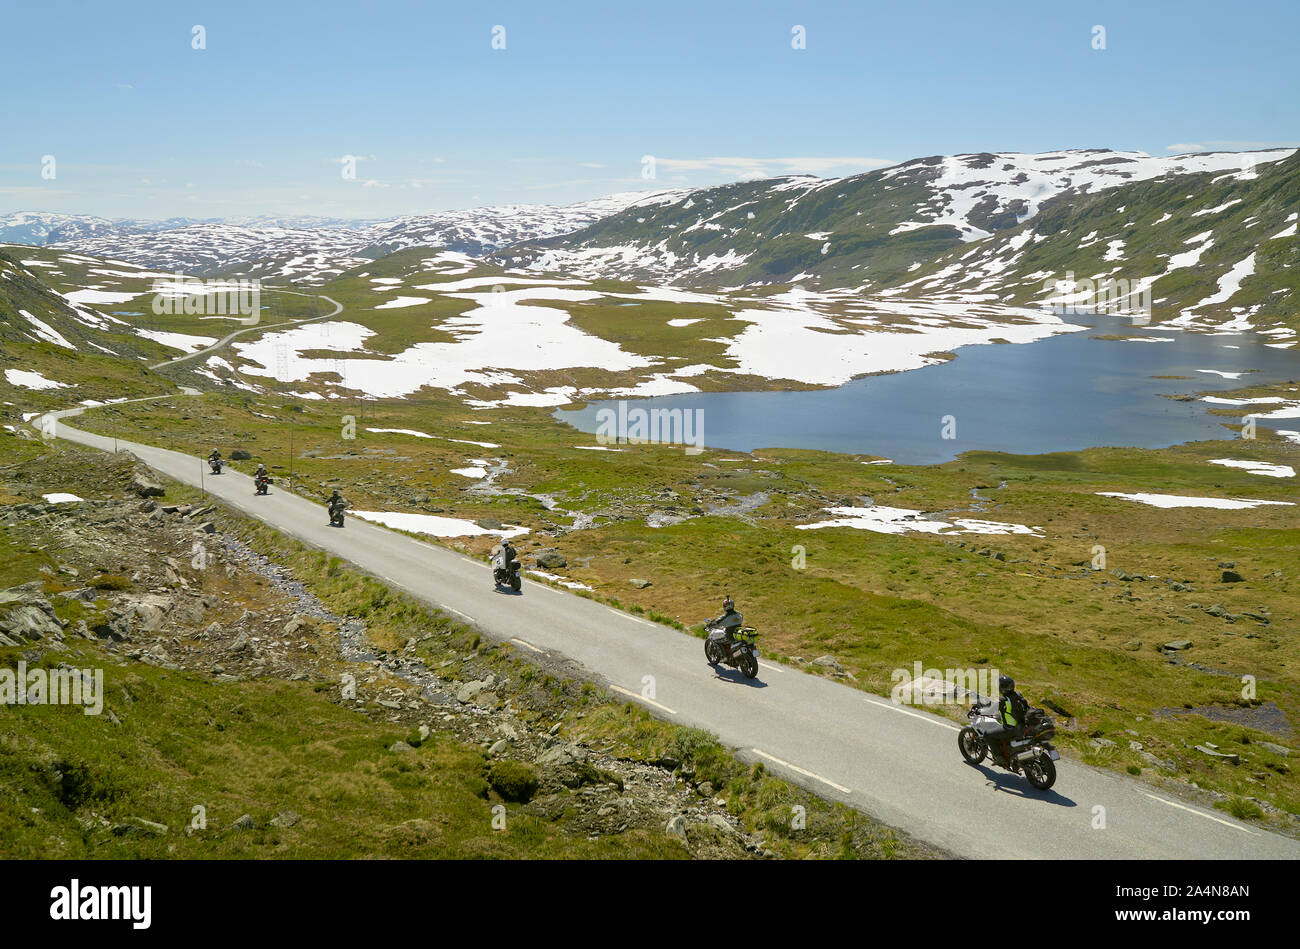 People on motorbikes in mountainous landscape Stock Photo